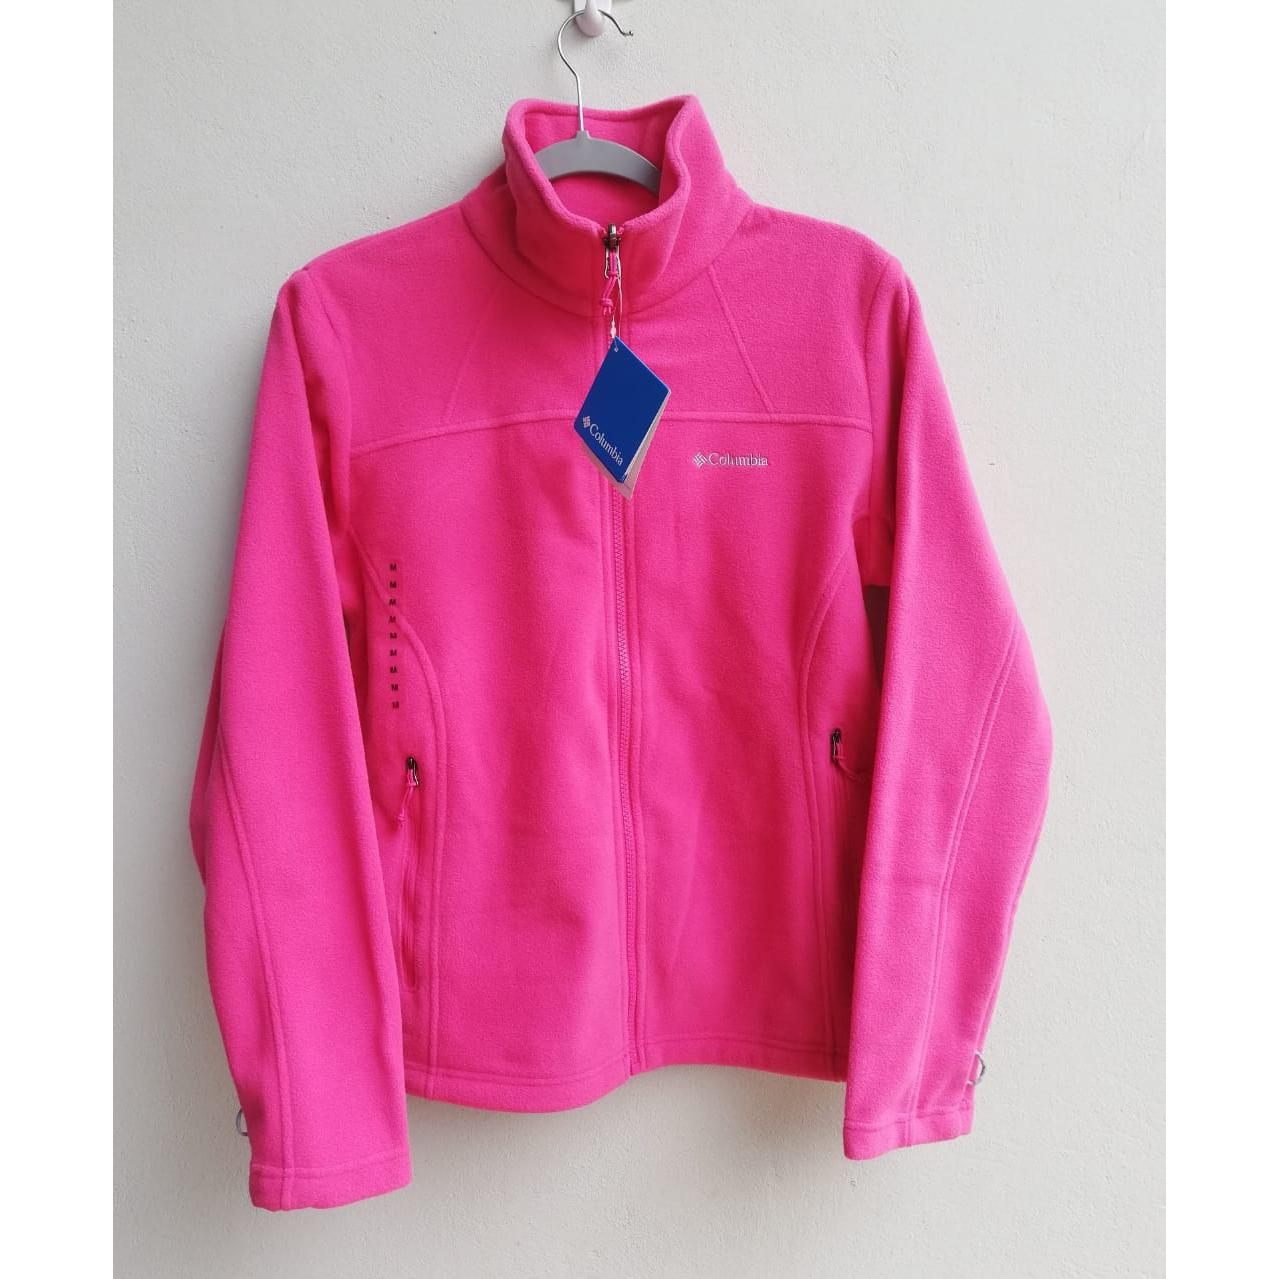 Abrigo Columbia, color rosado, talla M (Fleece Falls II Full Zip) - The Gift Shop Costa Rica